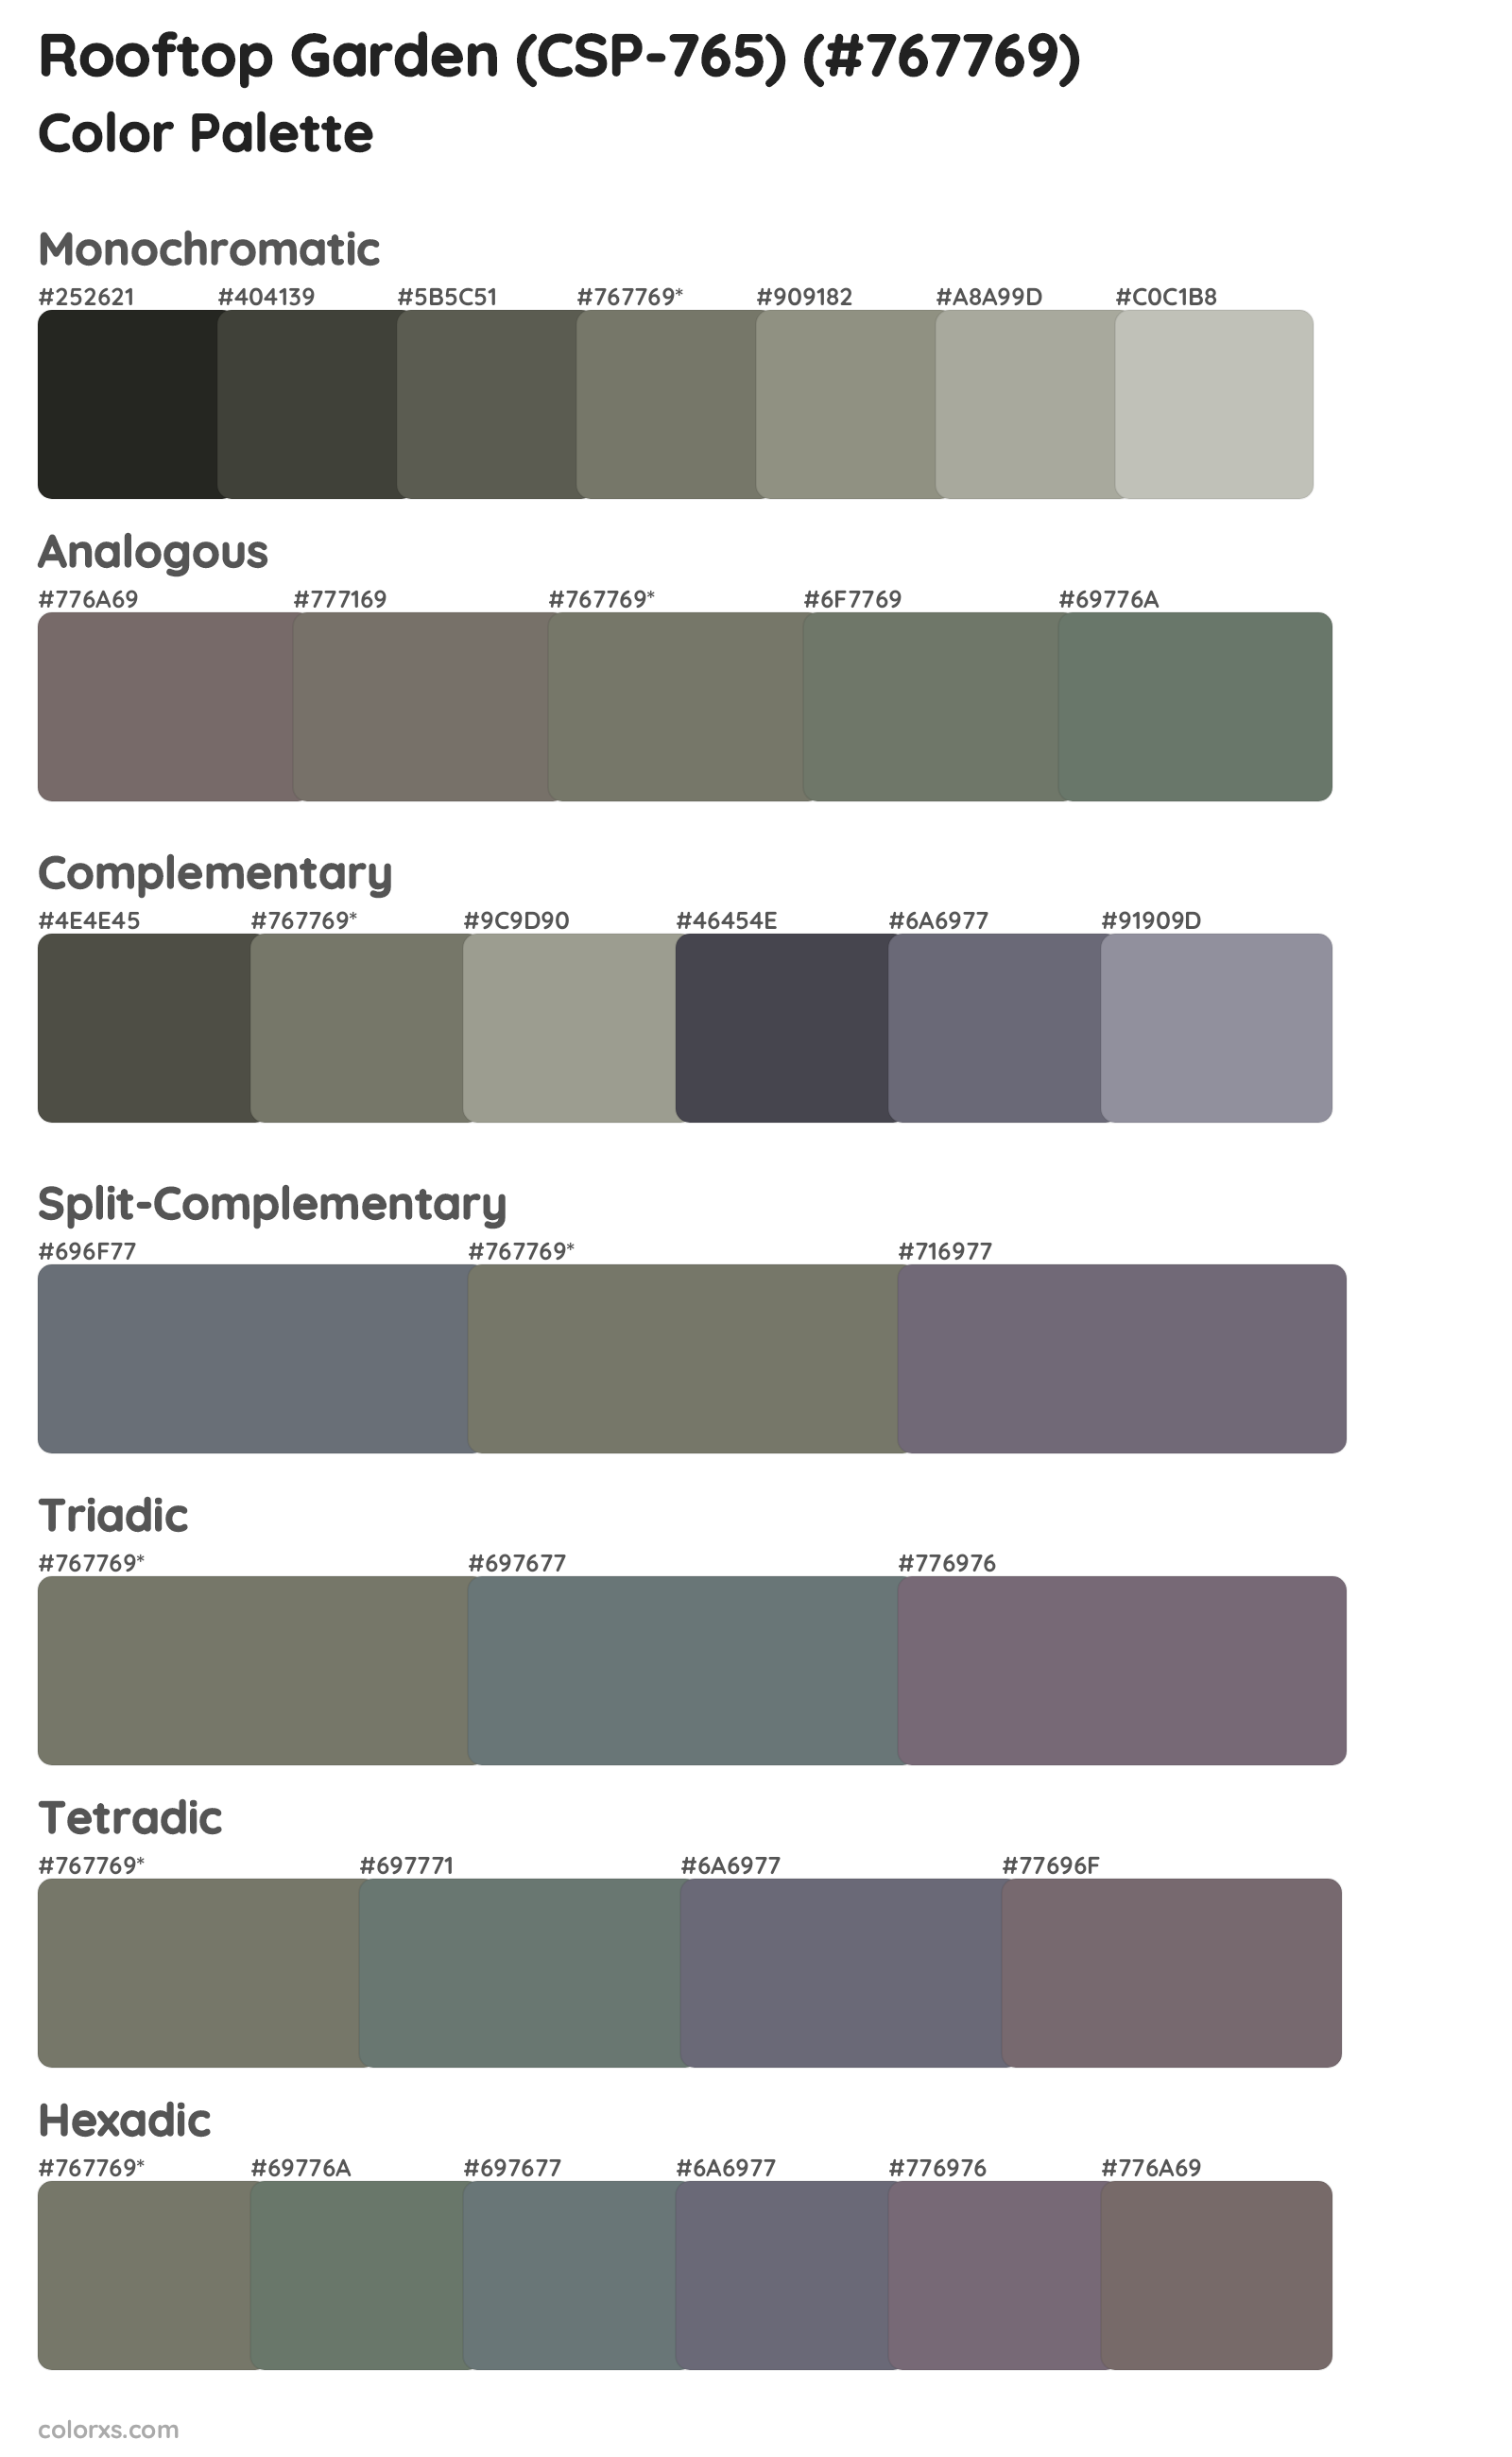 Rooftop Garden (CSP-765) Color Scheme Palettes